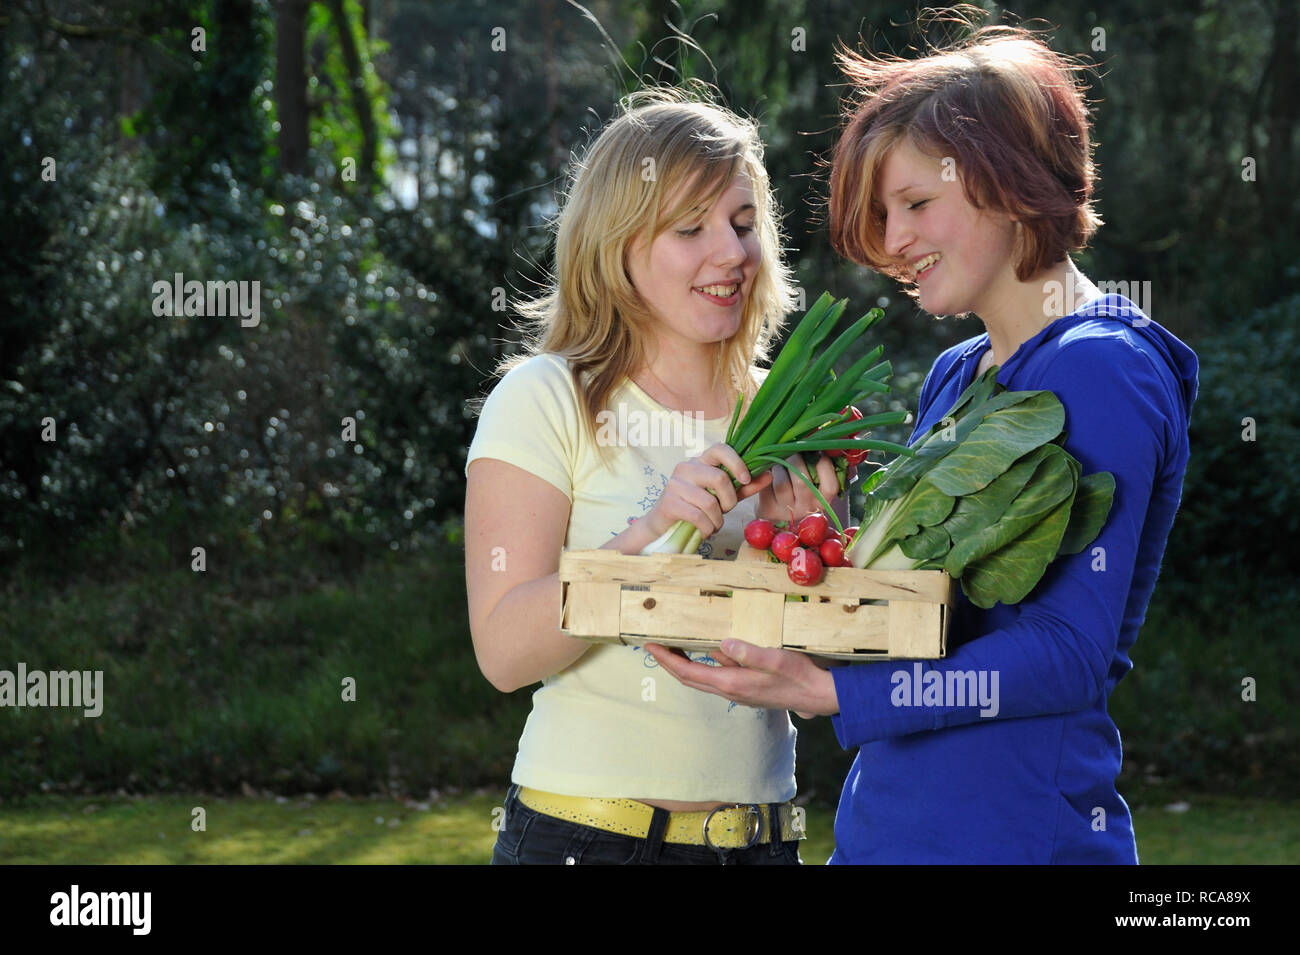 Zwei jungendliche Frauen mit Gemüsekorb im Arm - junges Gemüse | zwei junge Frauen mit Gemüse Warenkorb Stockfoto